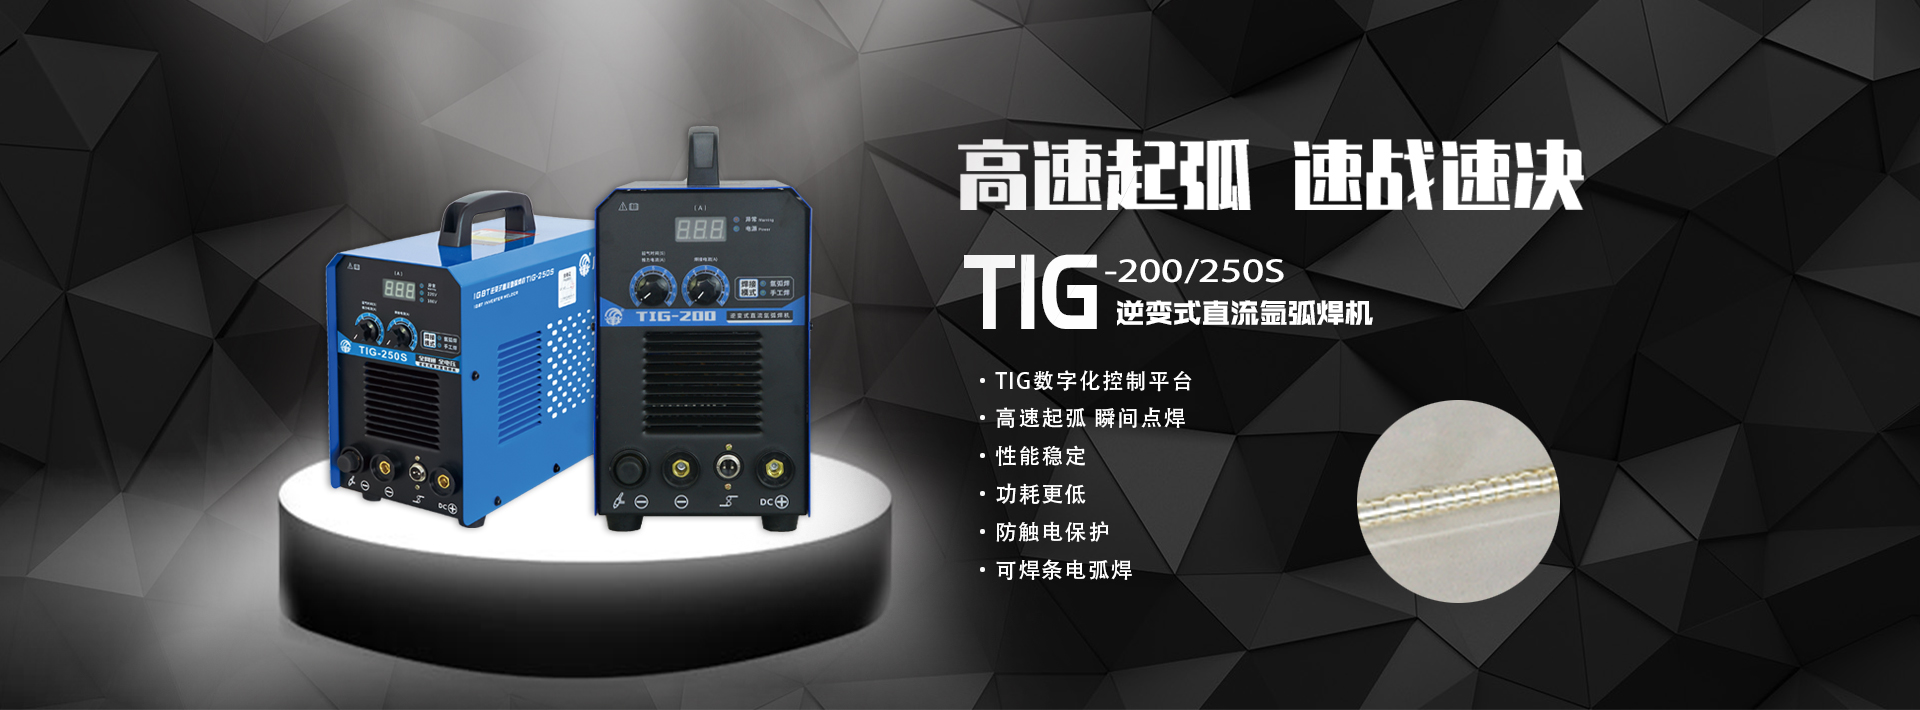 TIG200-250s.jpg